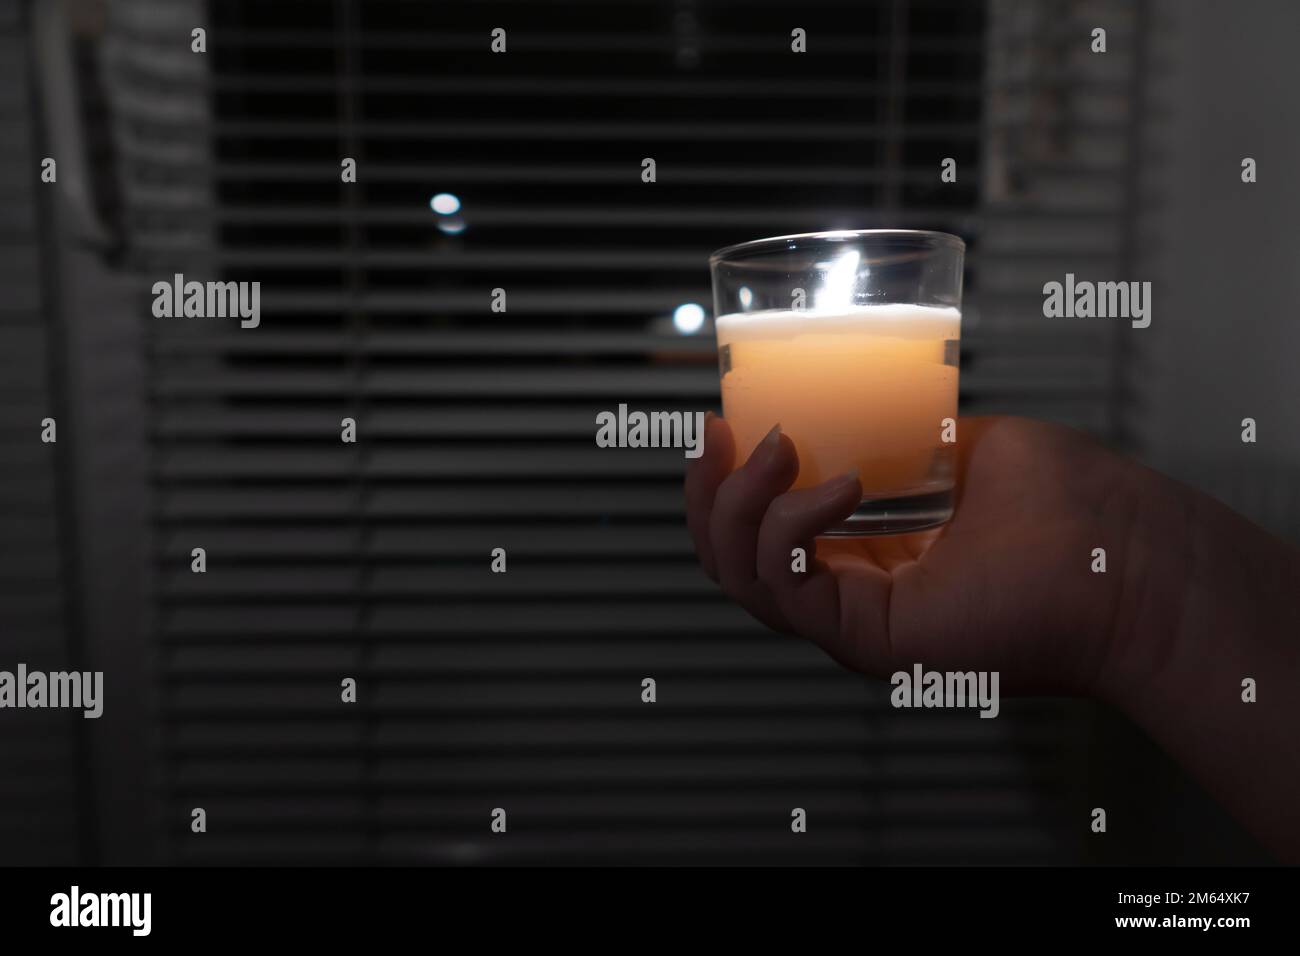 La niña sostiene una vela en un vaso en su mano contra el fondo de una ventana con persianas (primer plano). Interrupción. Crisis energética Foto de stock